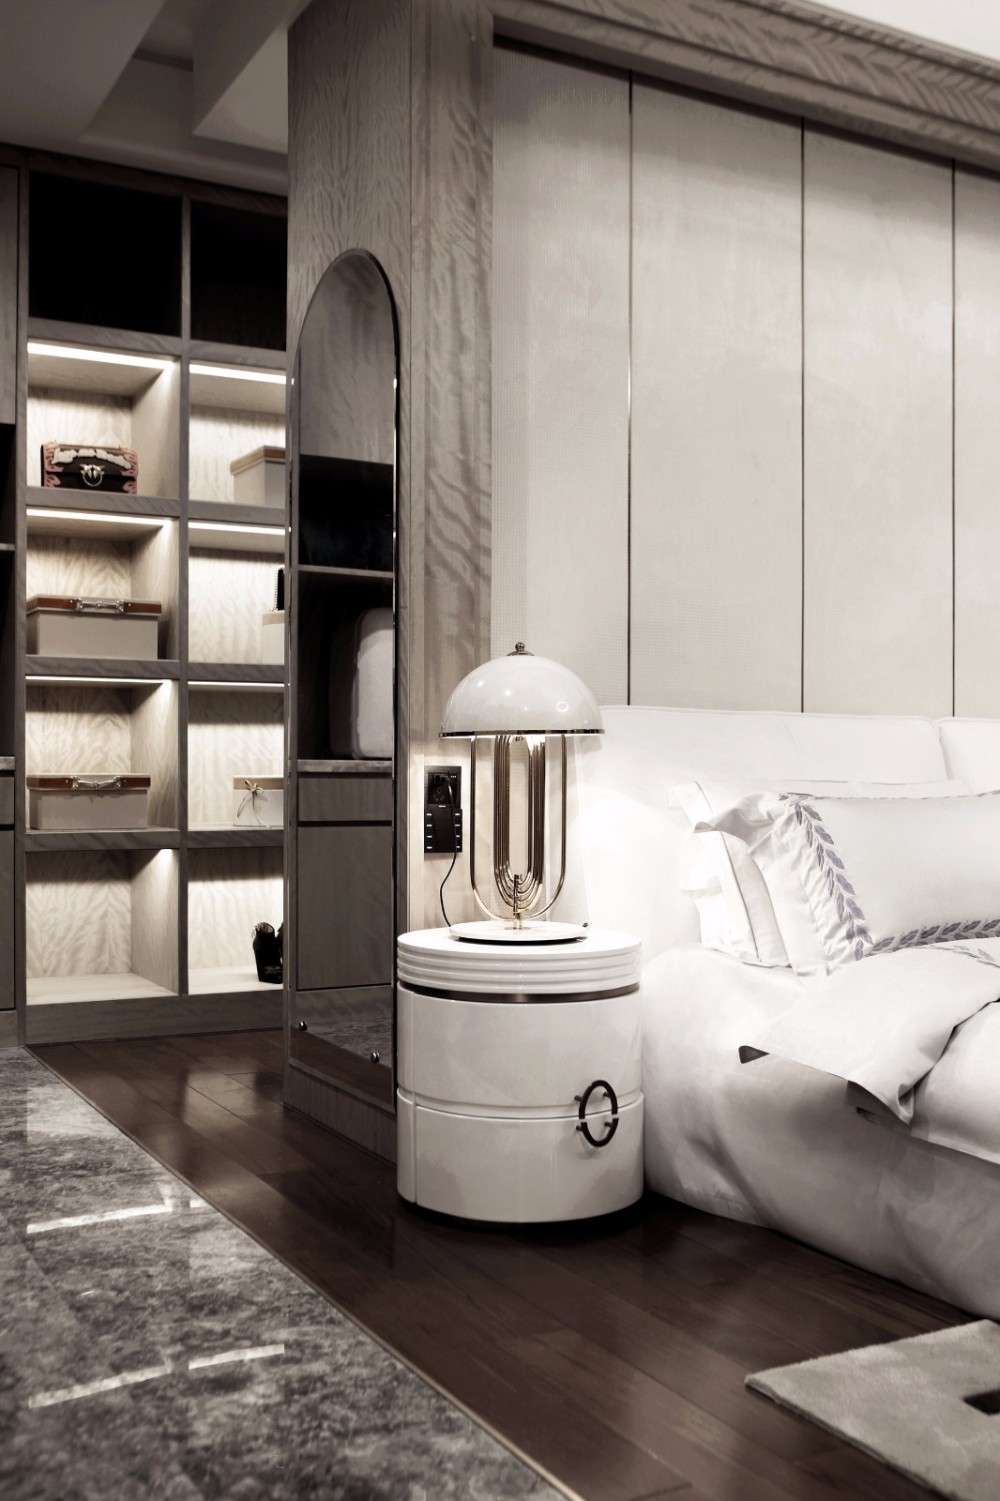 现代简约风格室内设计家装案例-卧室